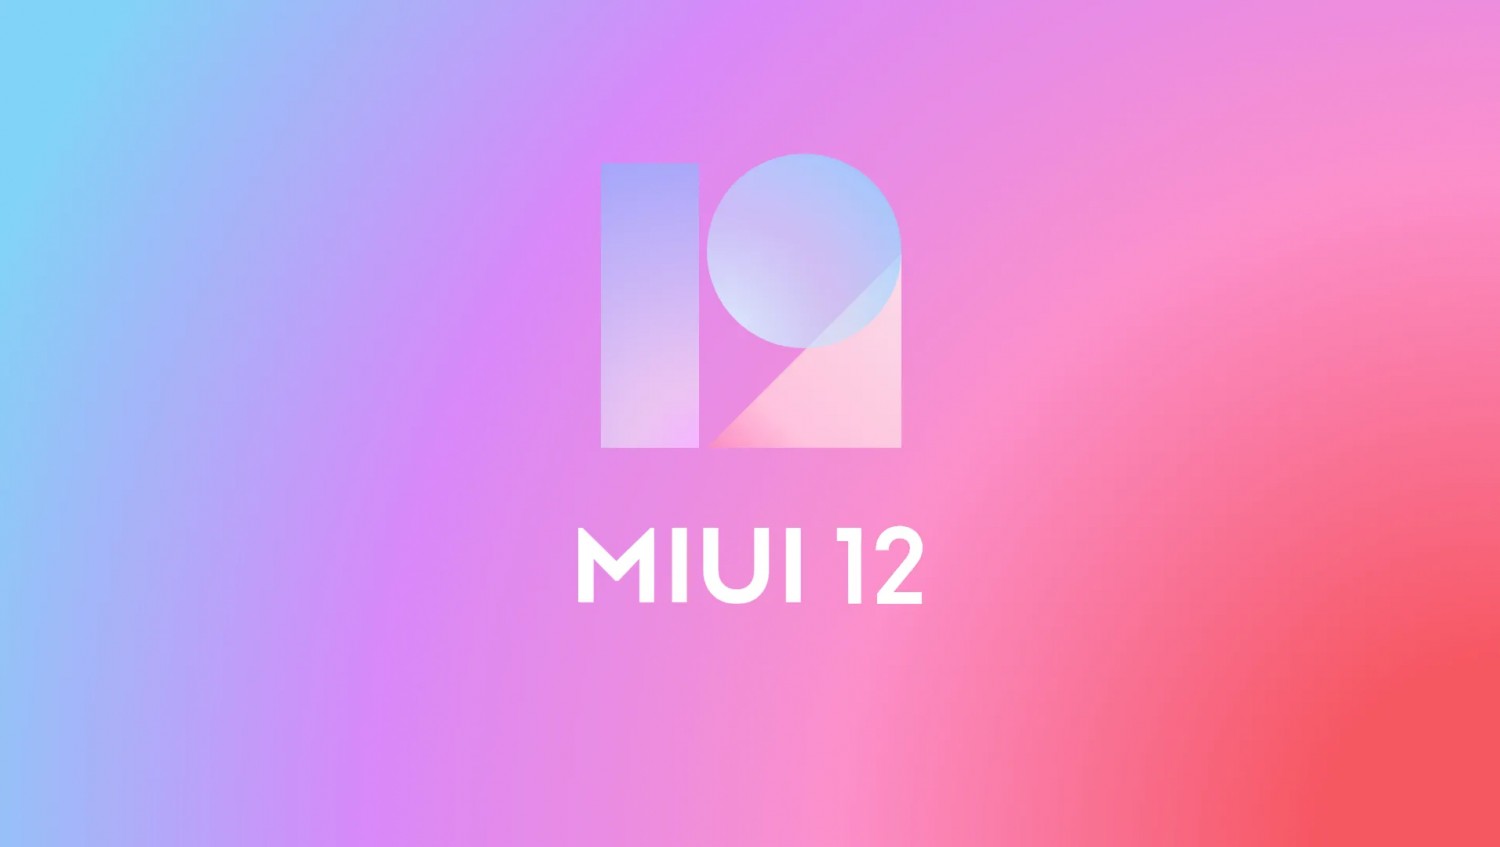 Приложение «Камера» в MIUI 12 получило два новых режима